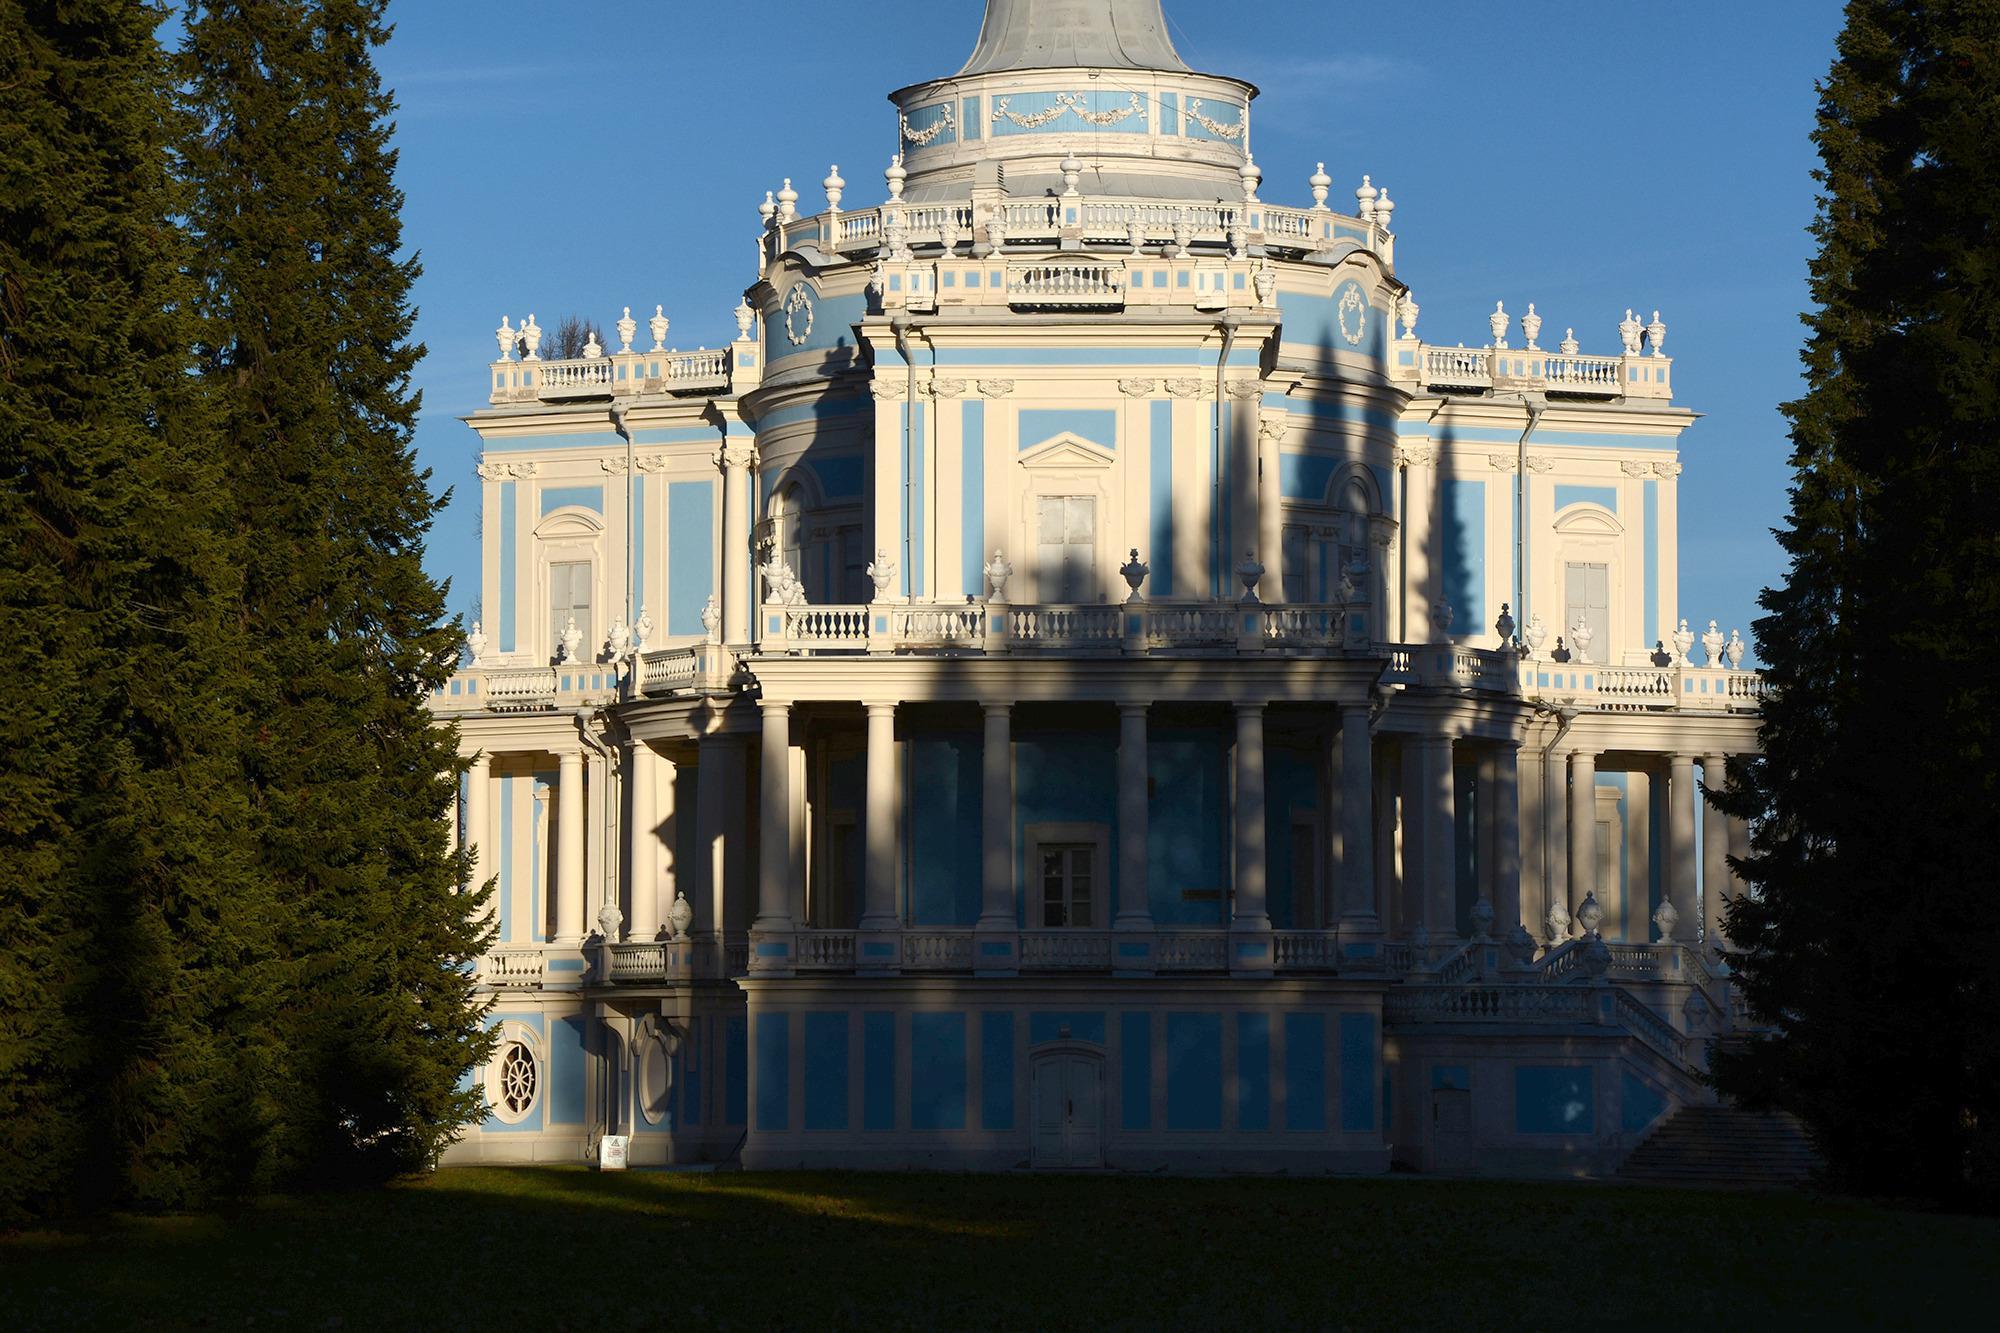 Oranienbaum Palace, Lomonosov, Russia